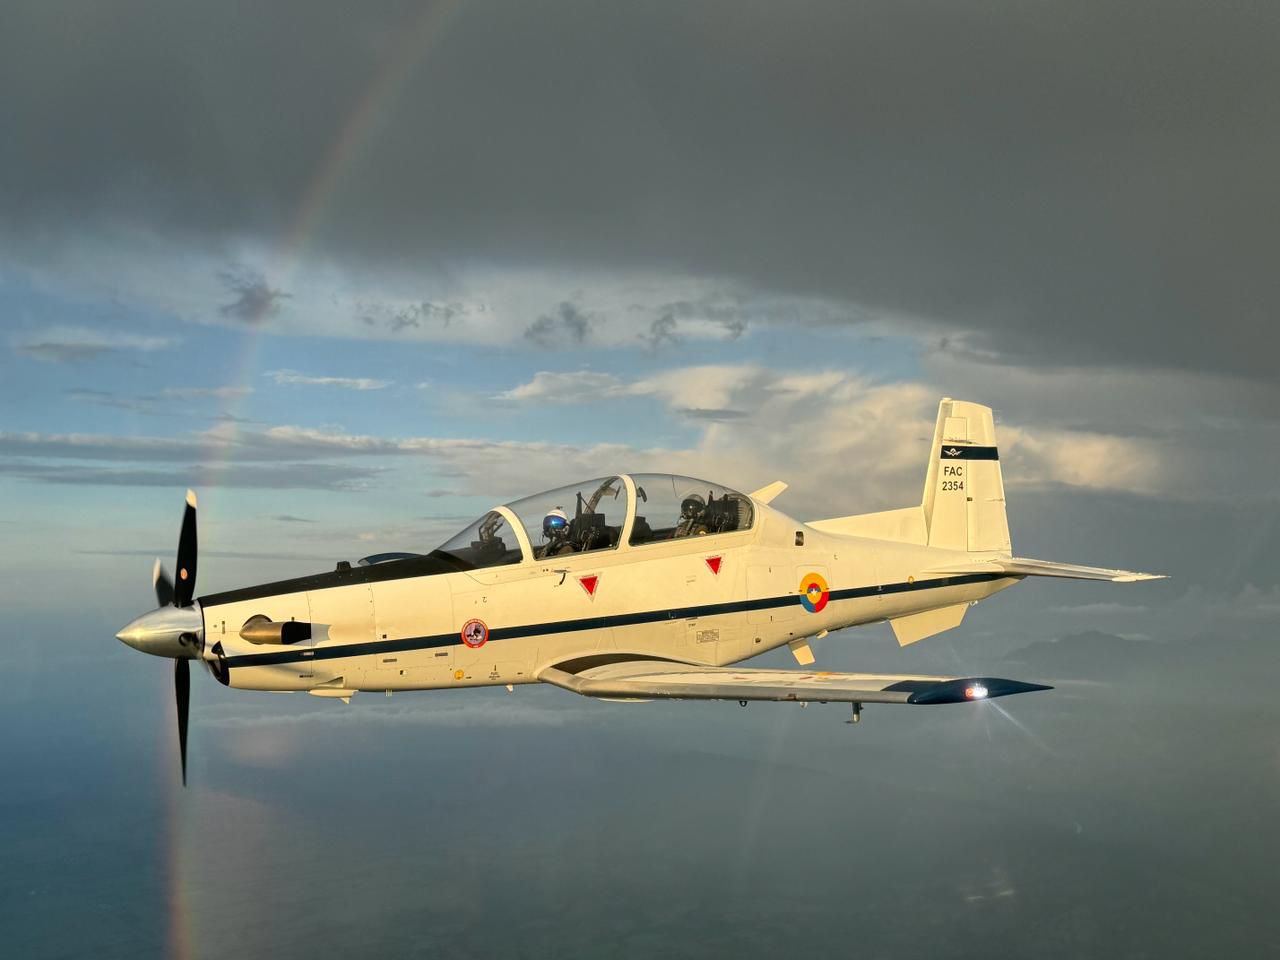 Instrucción y entrenamiento de aviación militar es realizada con alta tecnología, calidad y confiabilidad en la Escuela Internacional de Ala Fija